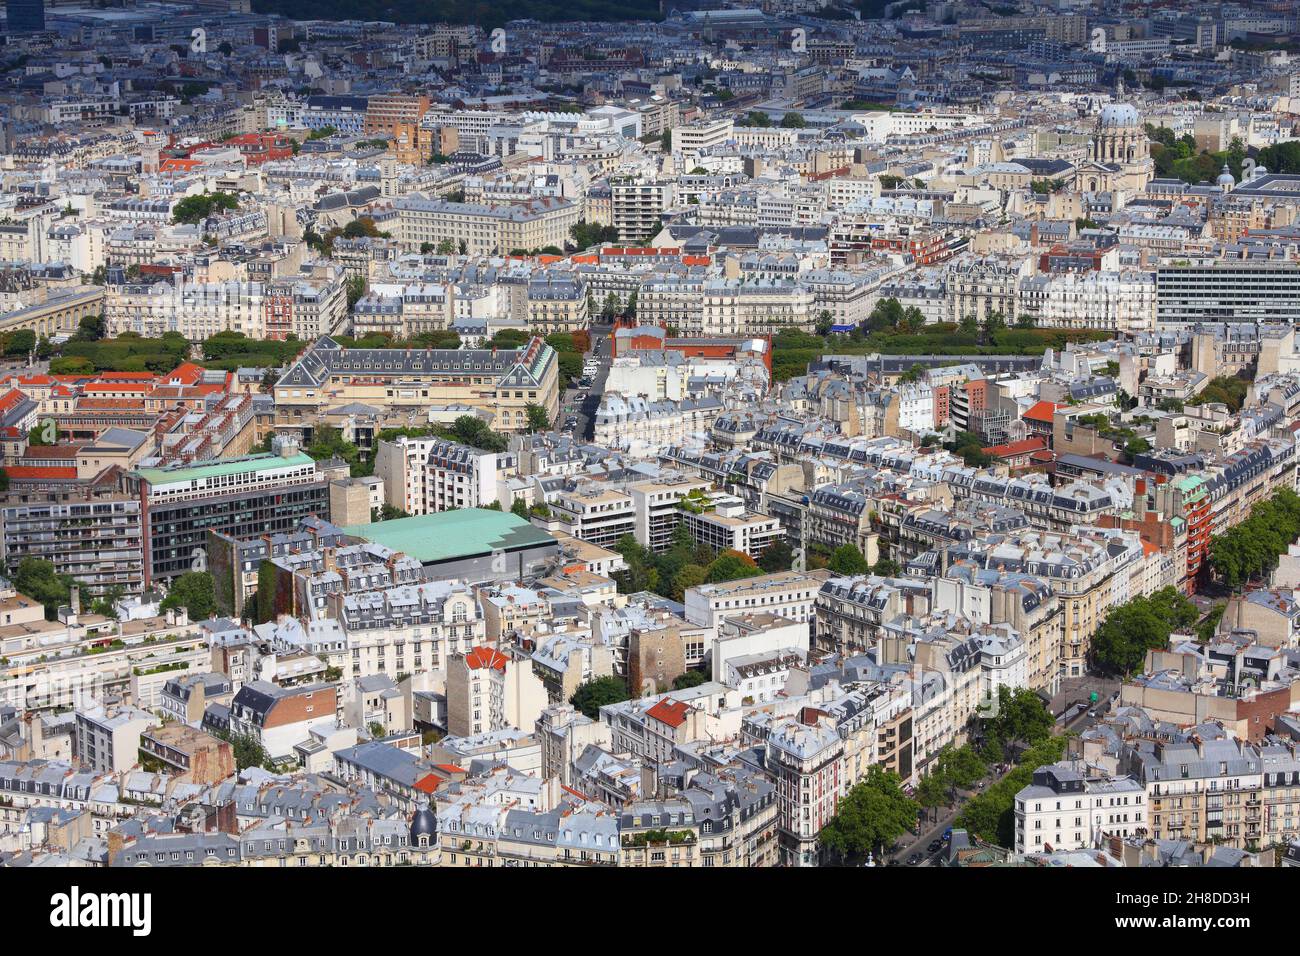 Val-de-Grace area of Paris city, France. 5th arrondissement of Paris. Stock Photo